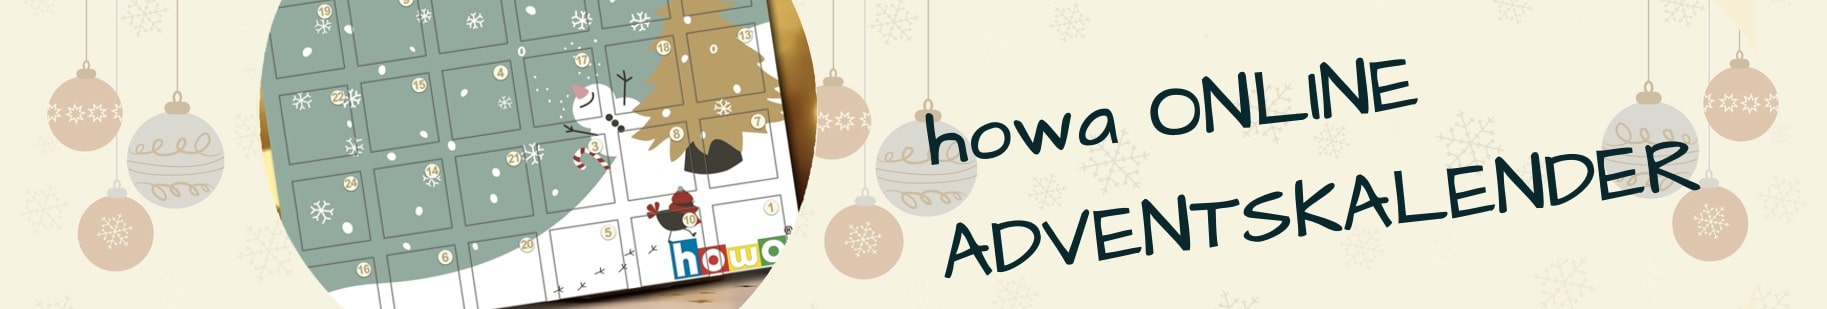 howa Online Adventskalender entdecken